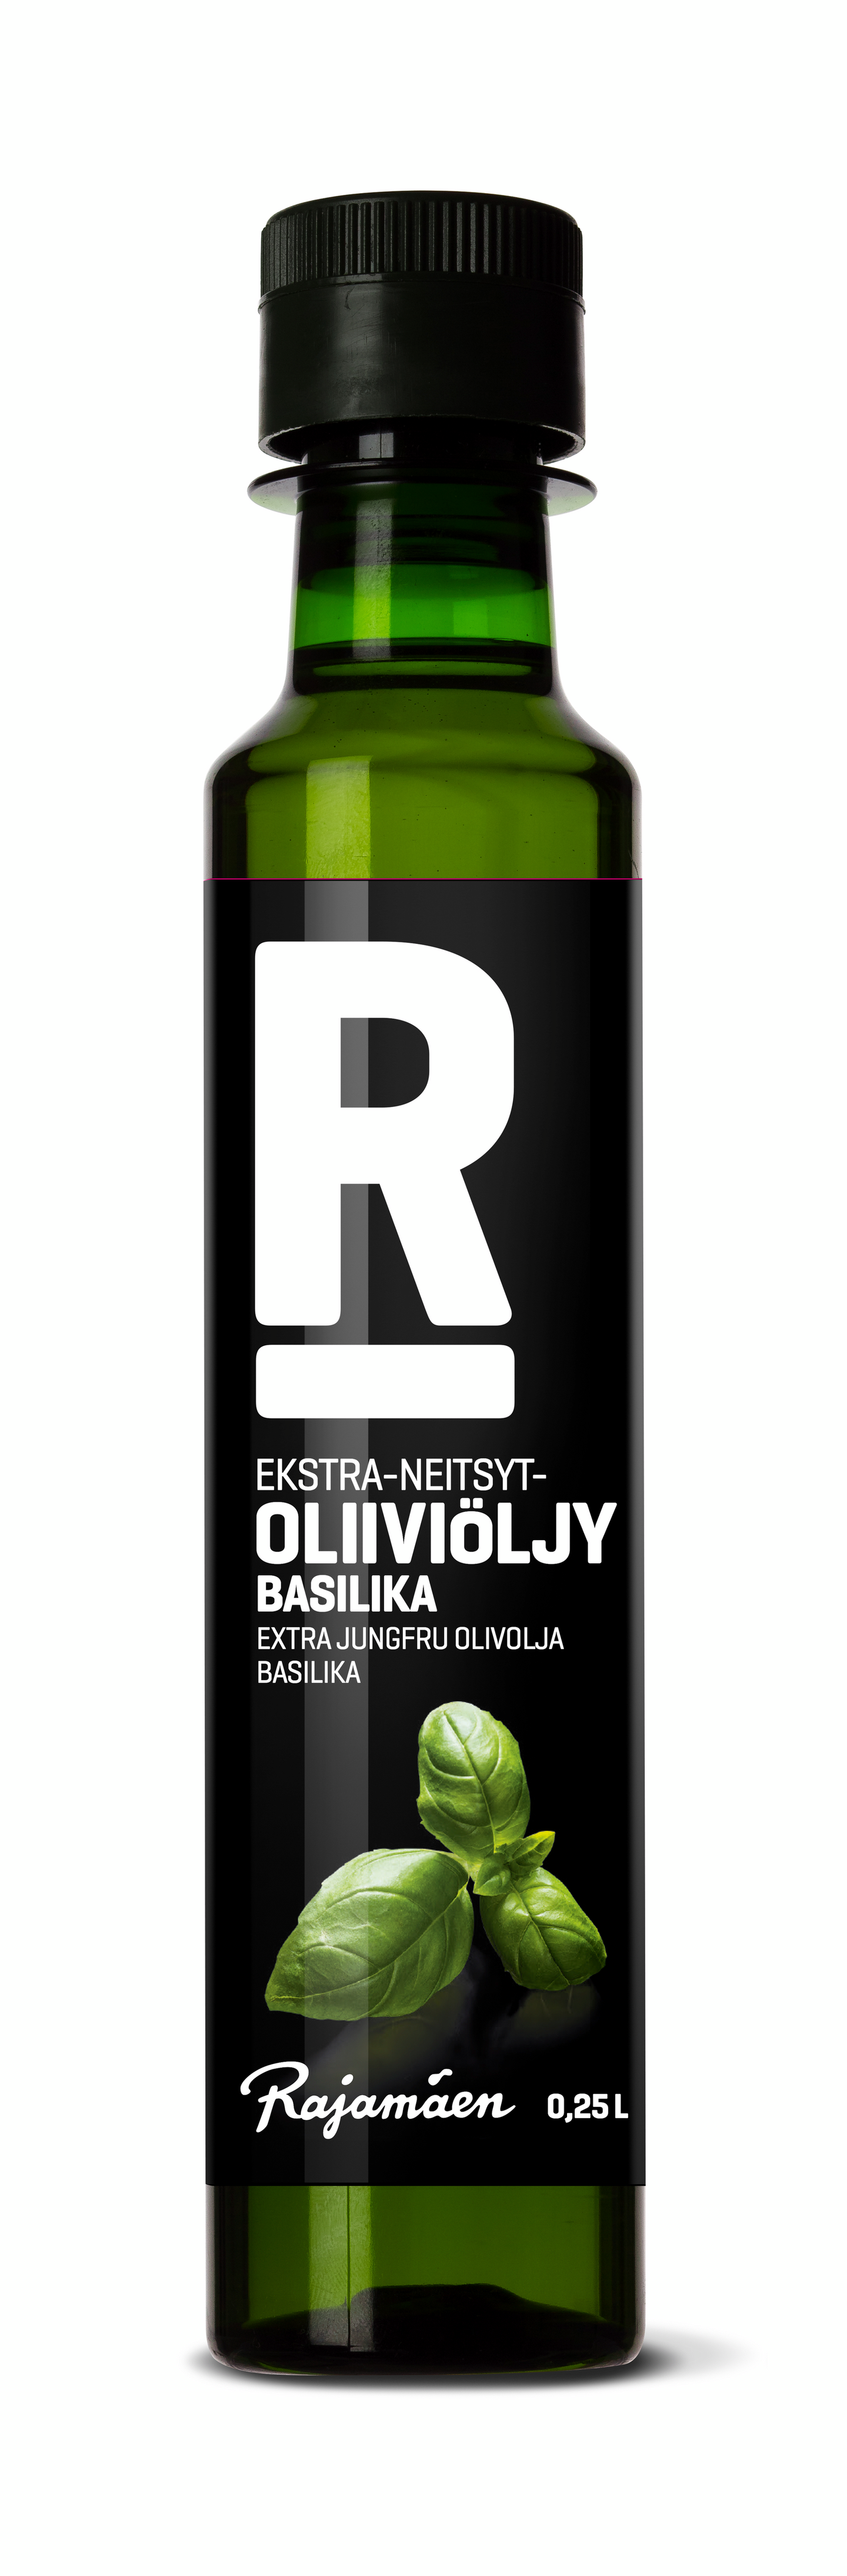 Rajamäen ekstra-neitsyt-oliiviöljy 0,25l basilika